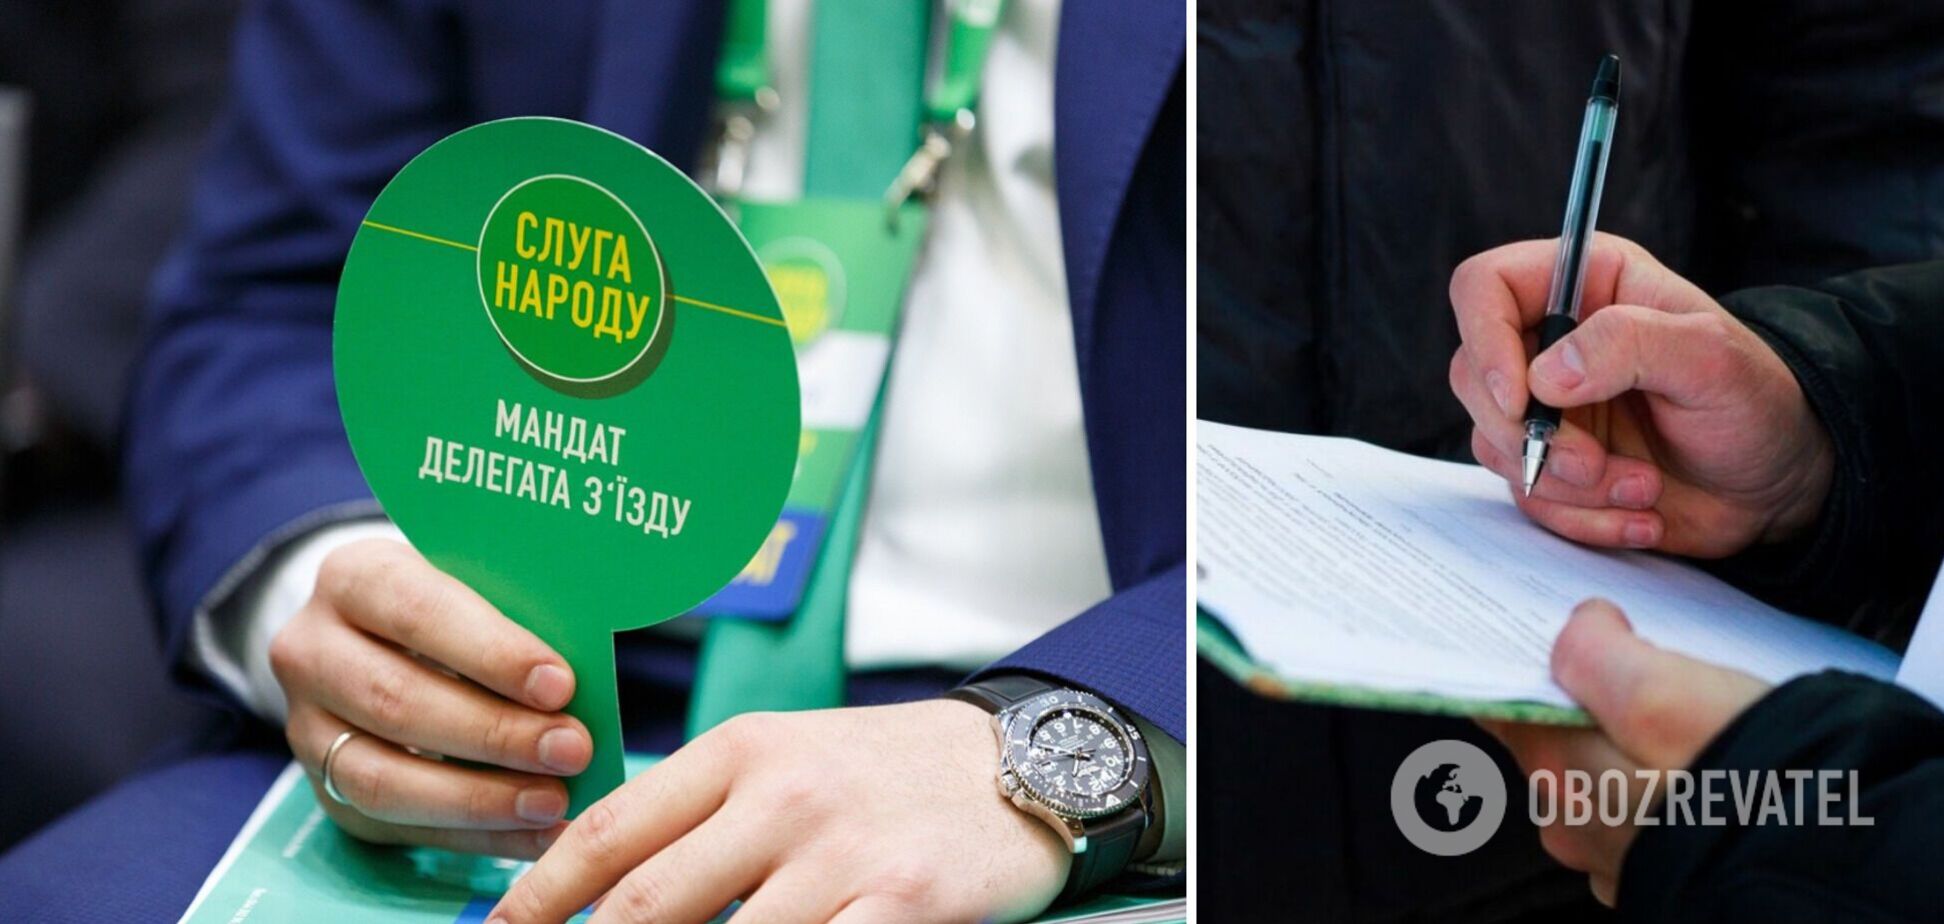 Считают ли украинцы команду Зеленского качественно новыми людьми: мнения поколений разделились – опрос